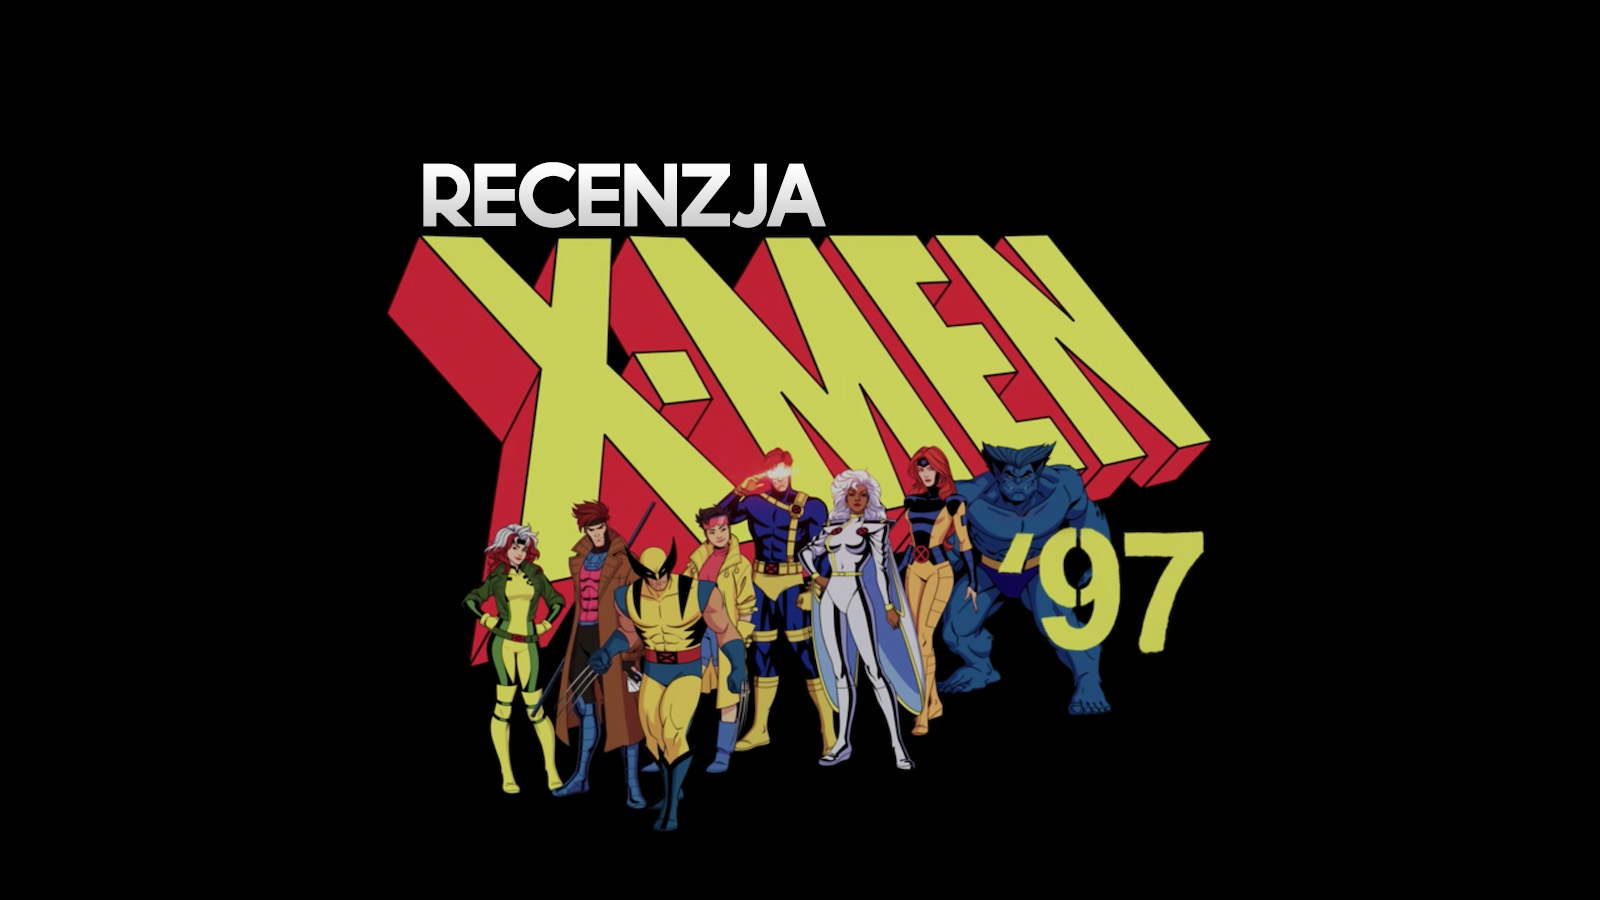 Recenzujemy serial "X-Men 97"! Czy to udany powrót kultowej animacji w 4K HDR?